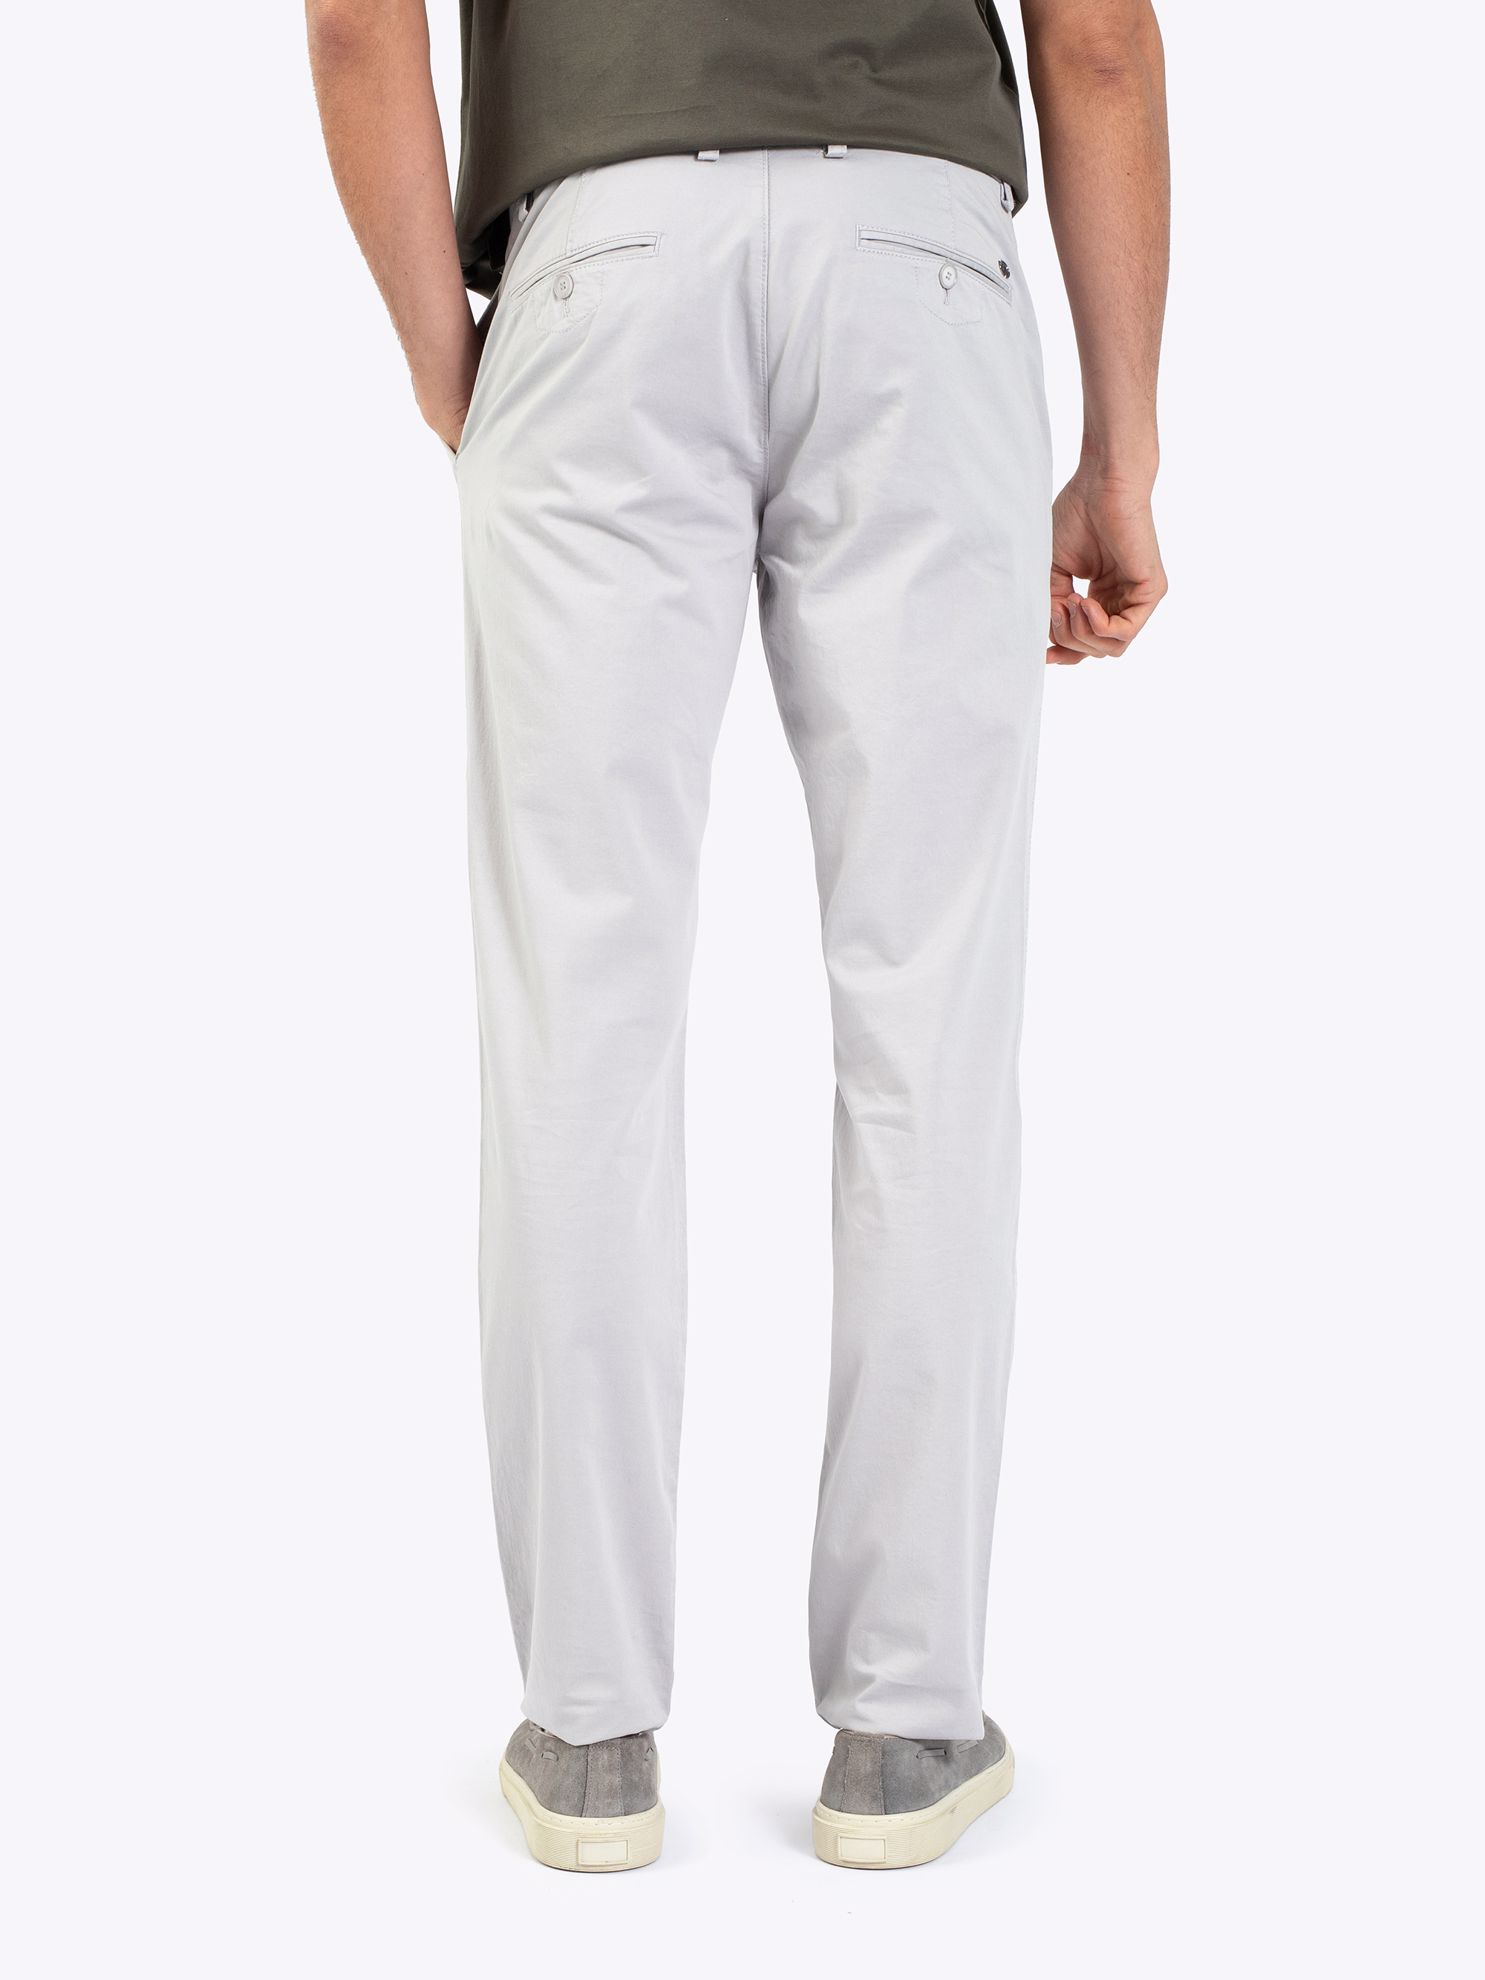 Karaca Erkek 6 Drop Pantolon-Açık Gri. ürün görseli